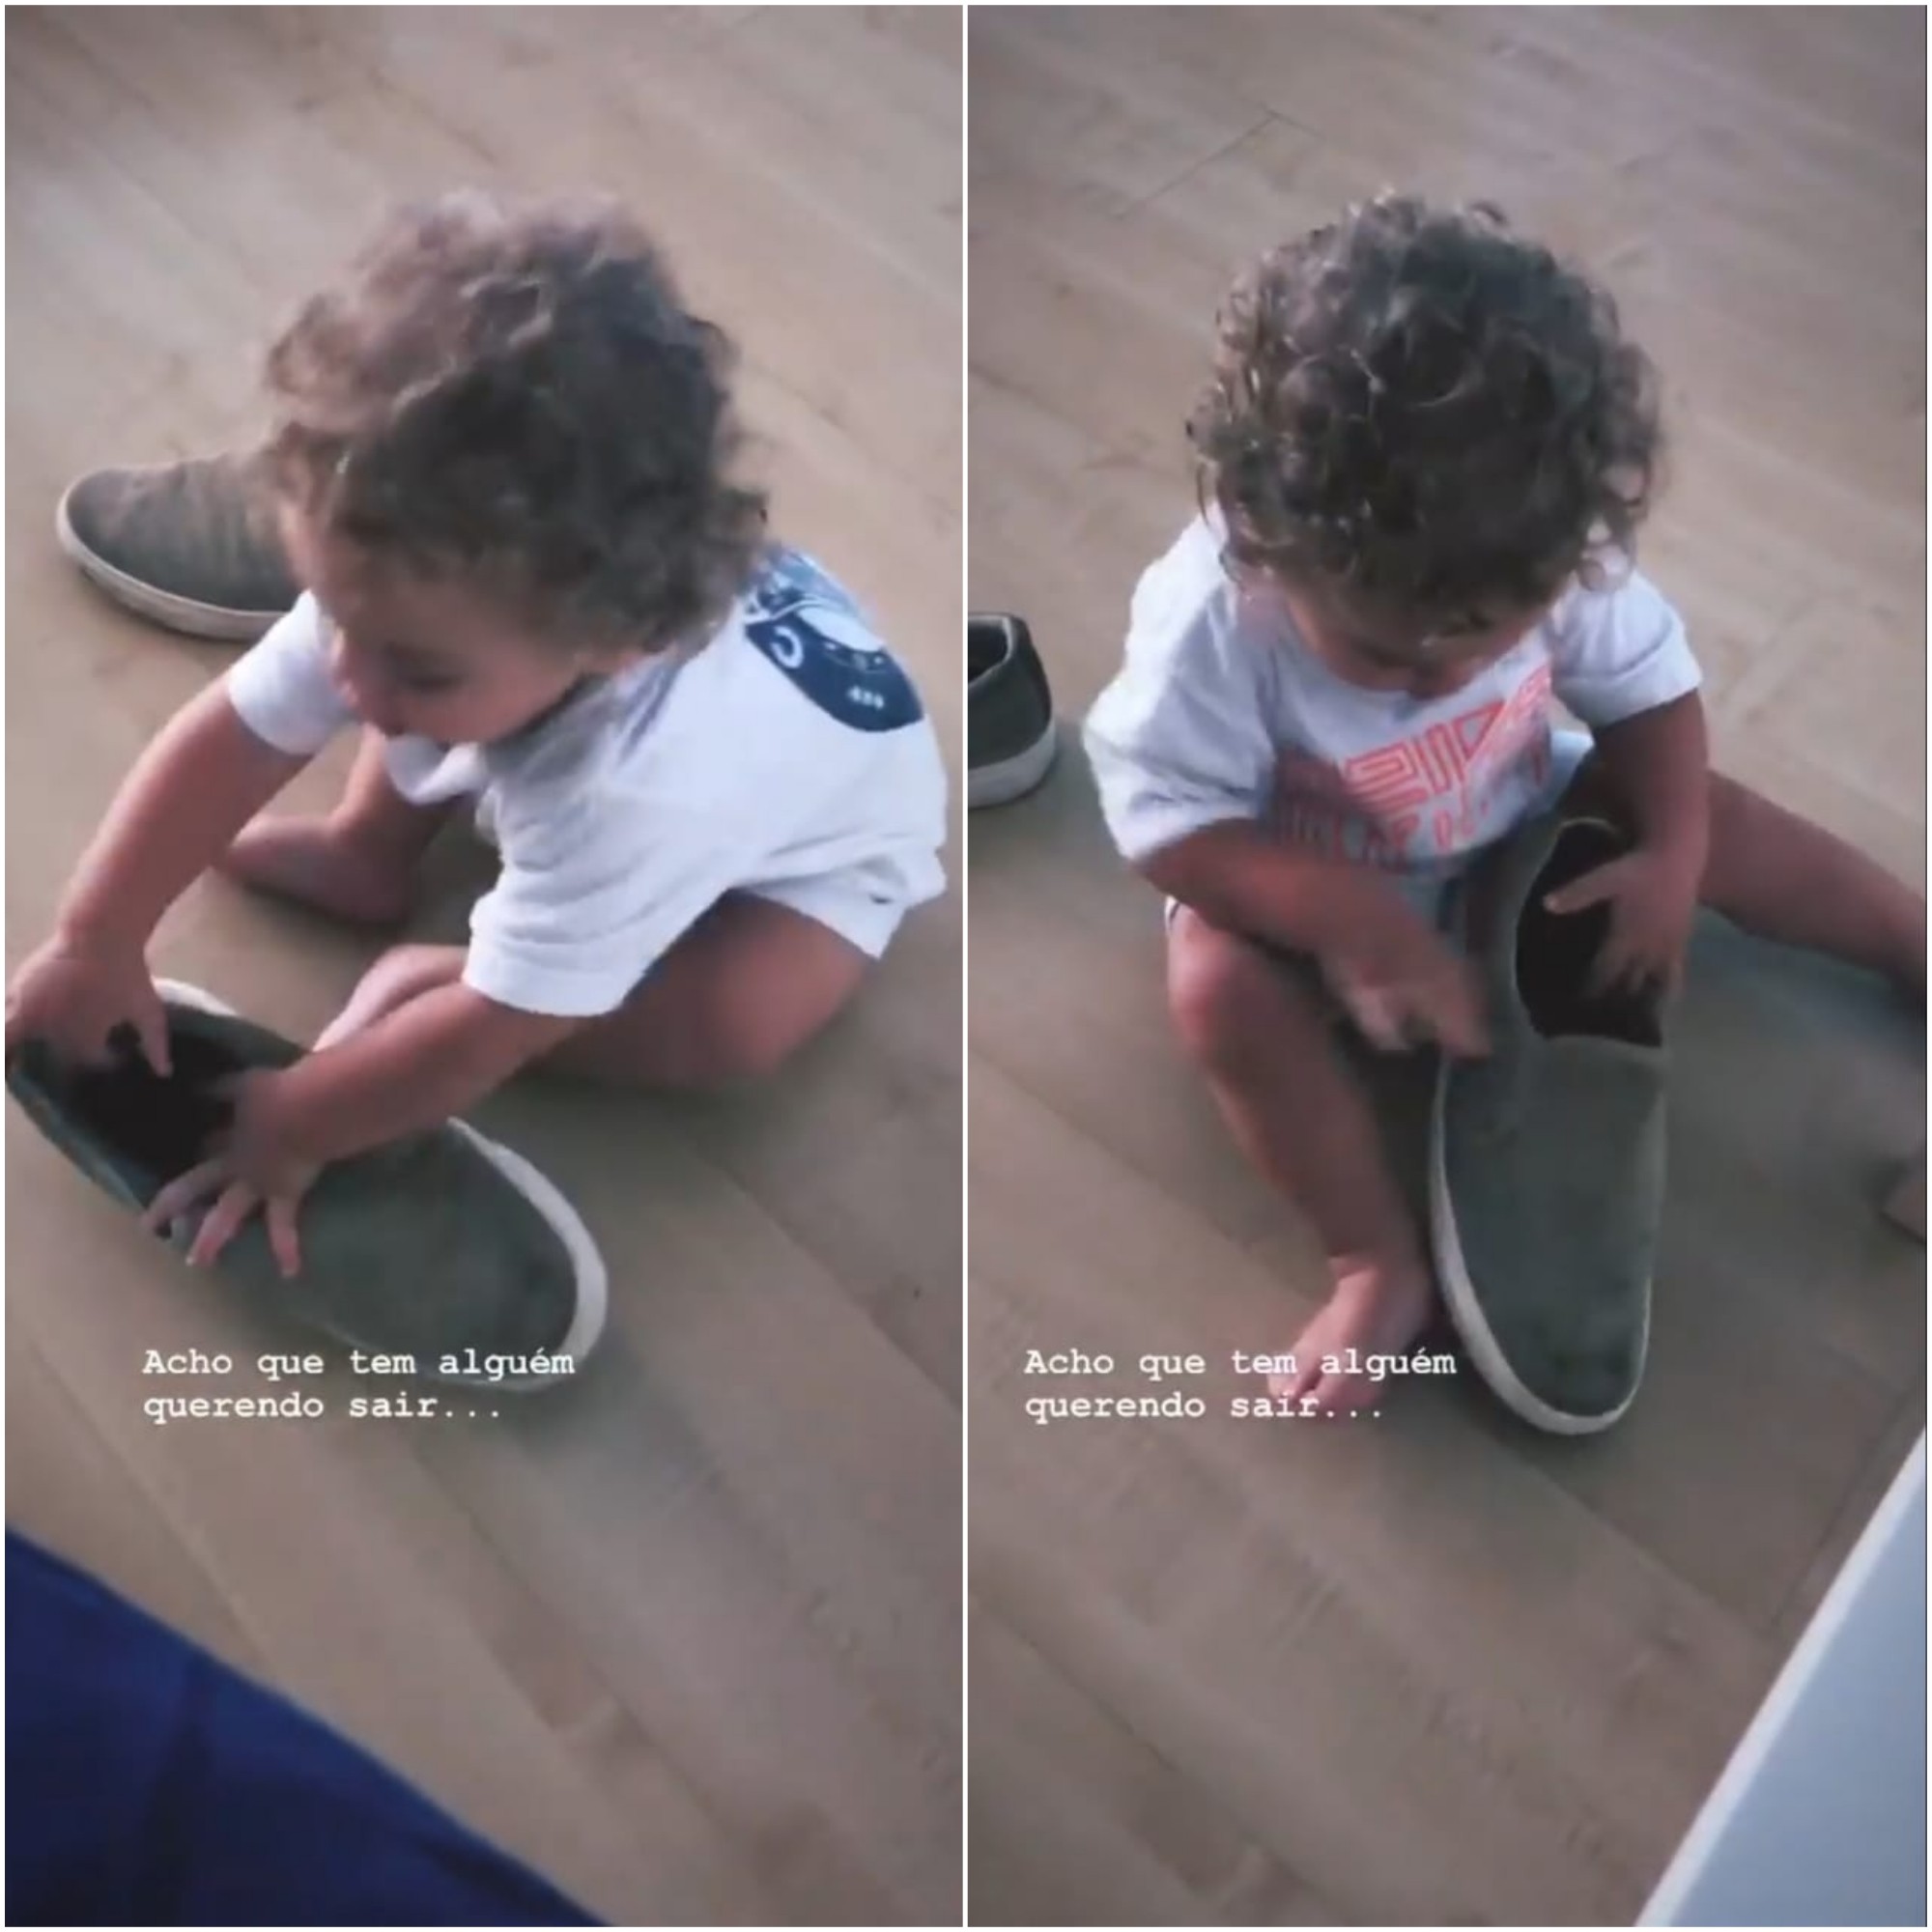 Vicente, de 1 ano, filho de Felipe Simas e Mariana Uhlmann, aparece tentando calçar o sapato do pai em vídeo compartilhado no Instagram (Foto: Reprodução/Instagram)